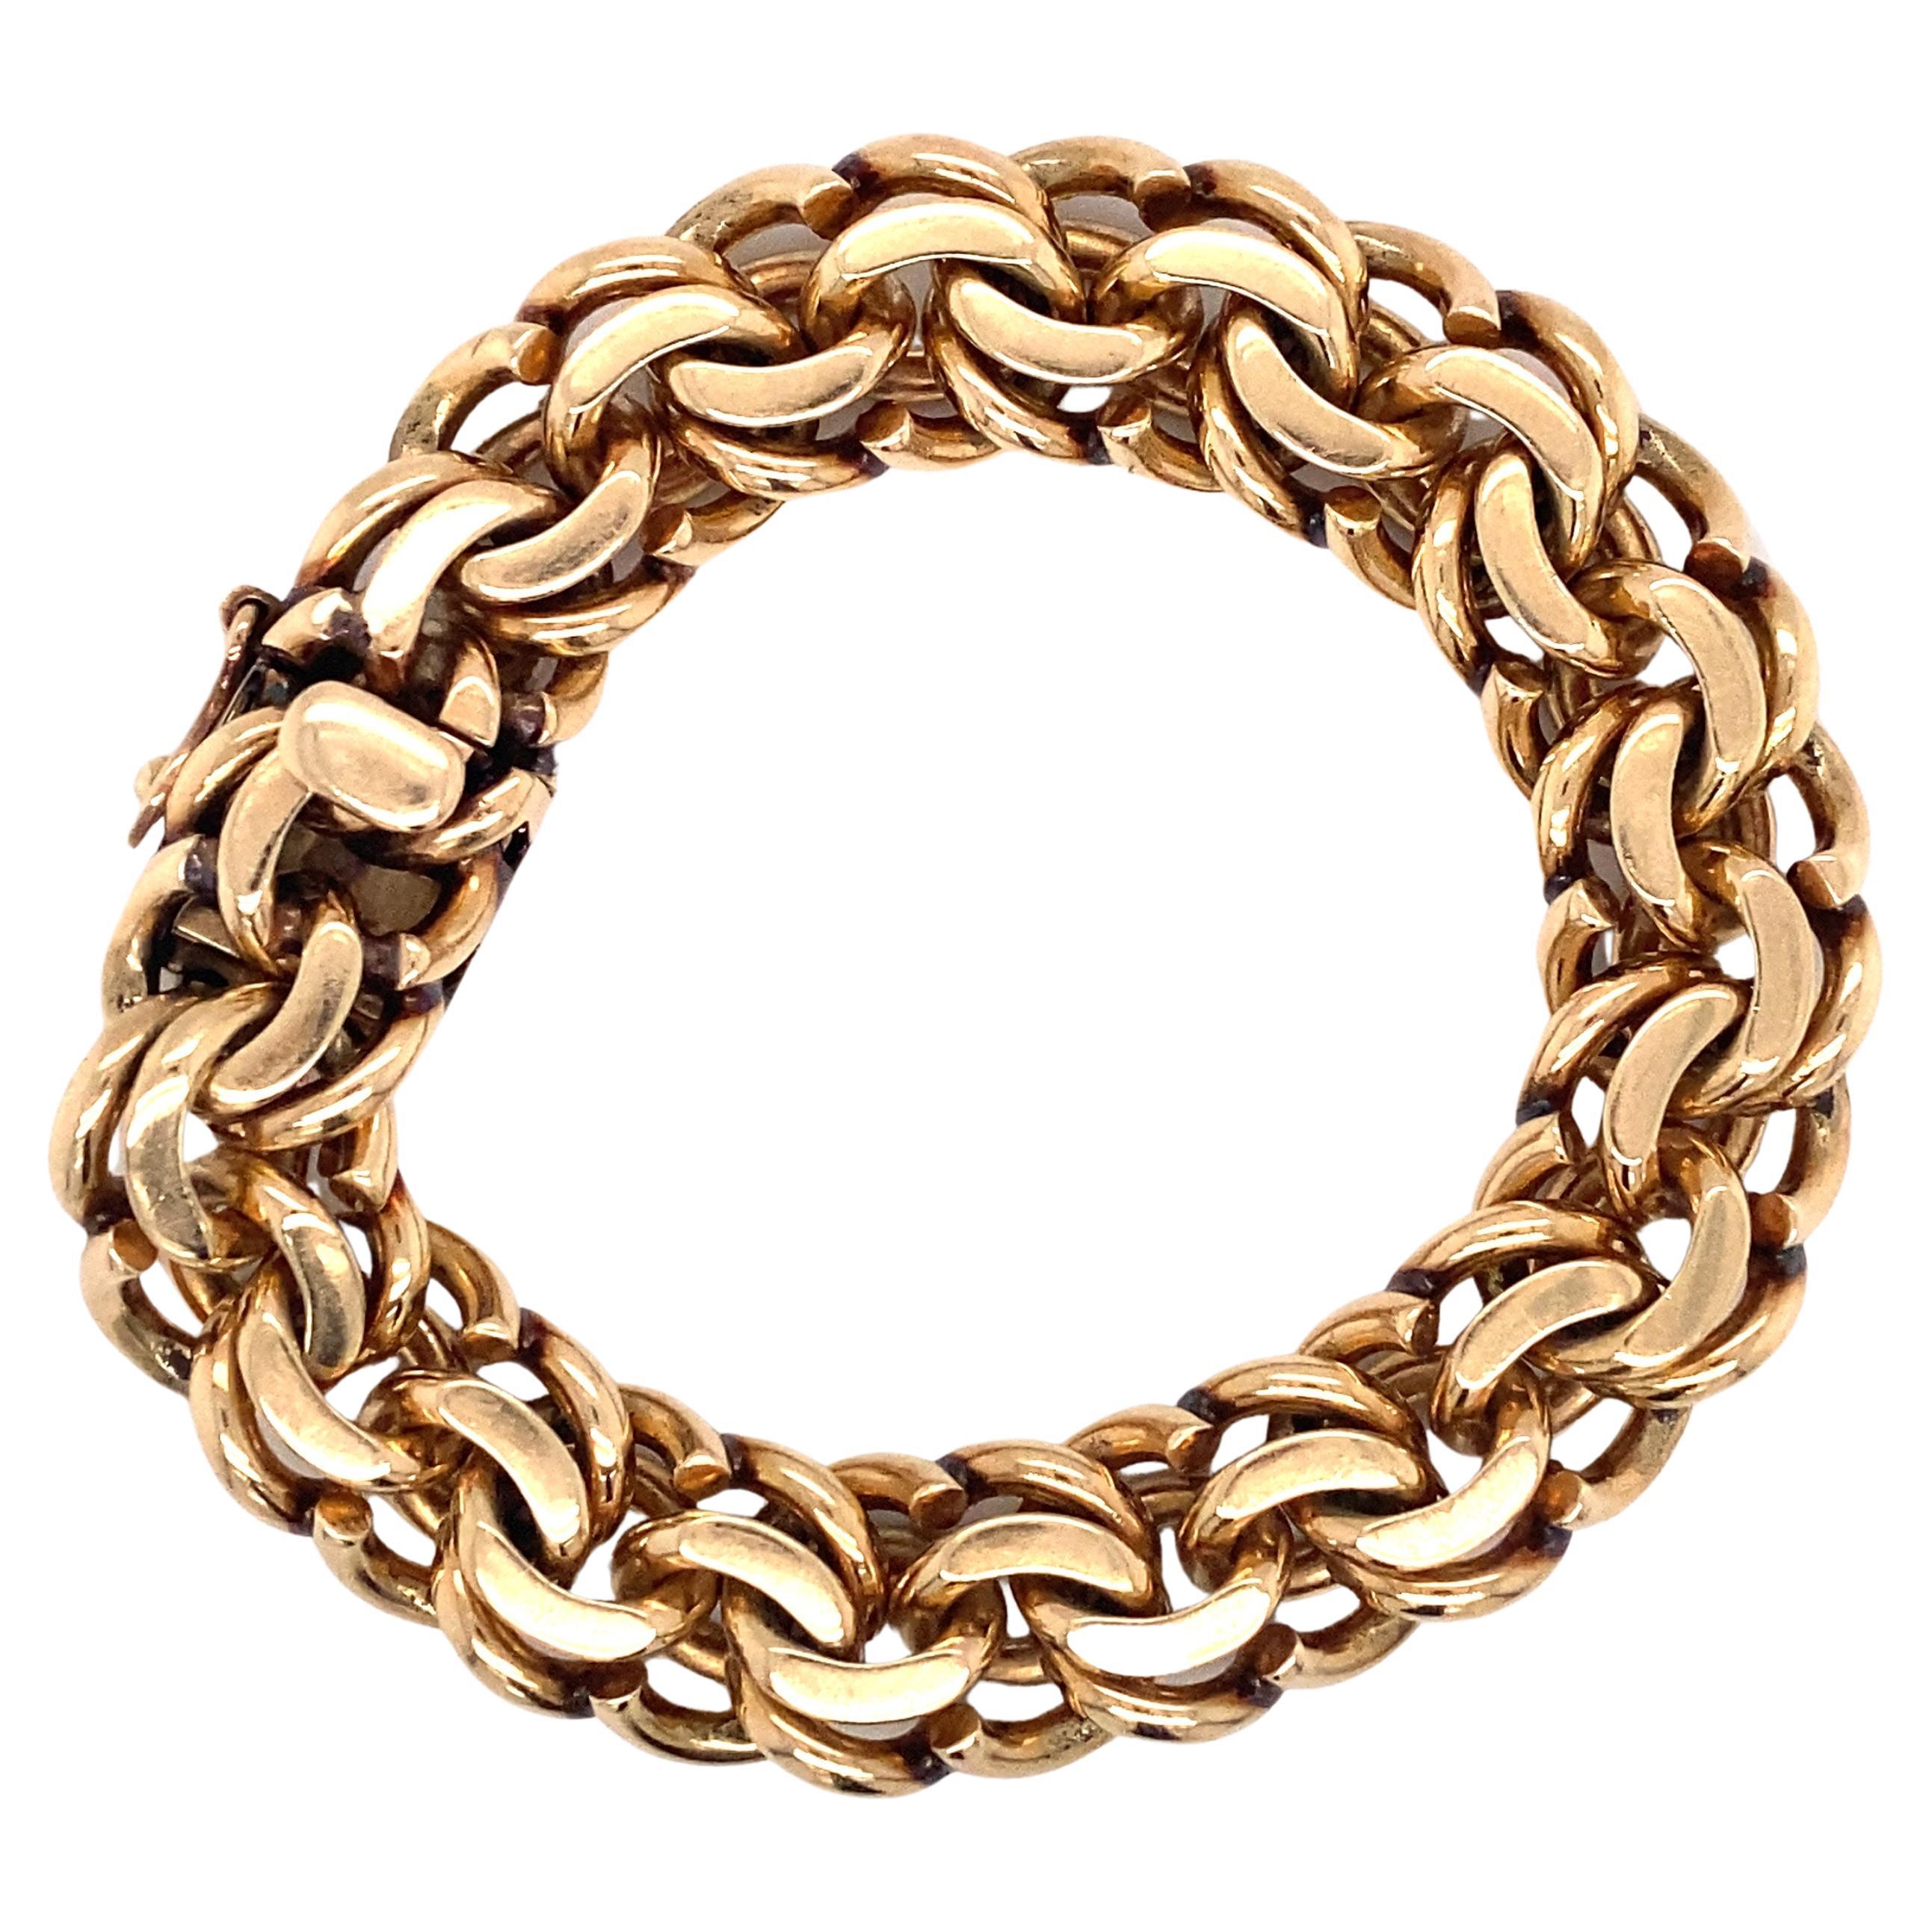 Tiffany & Co. 1970s Retro Chain Bracelet in 14 Karat Gold